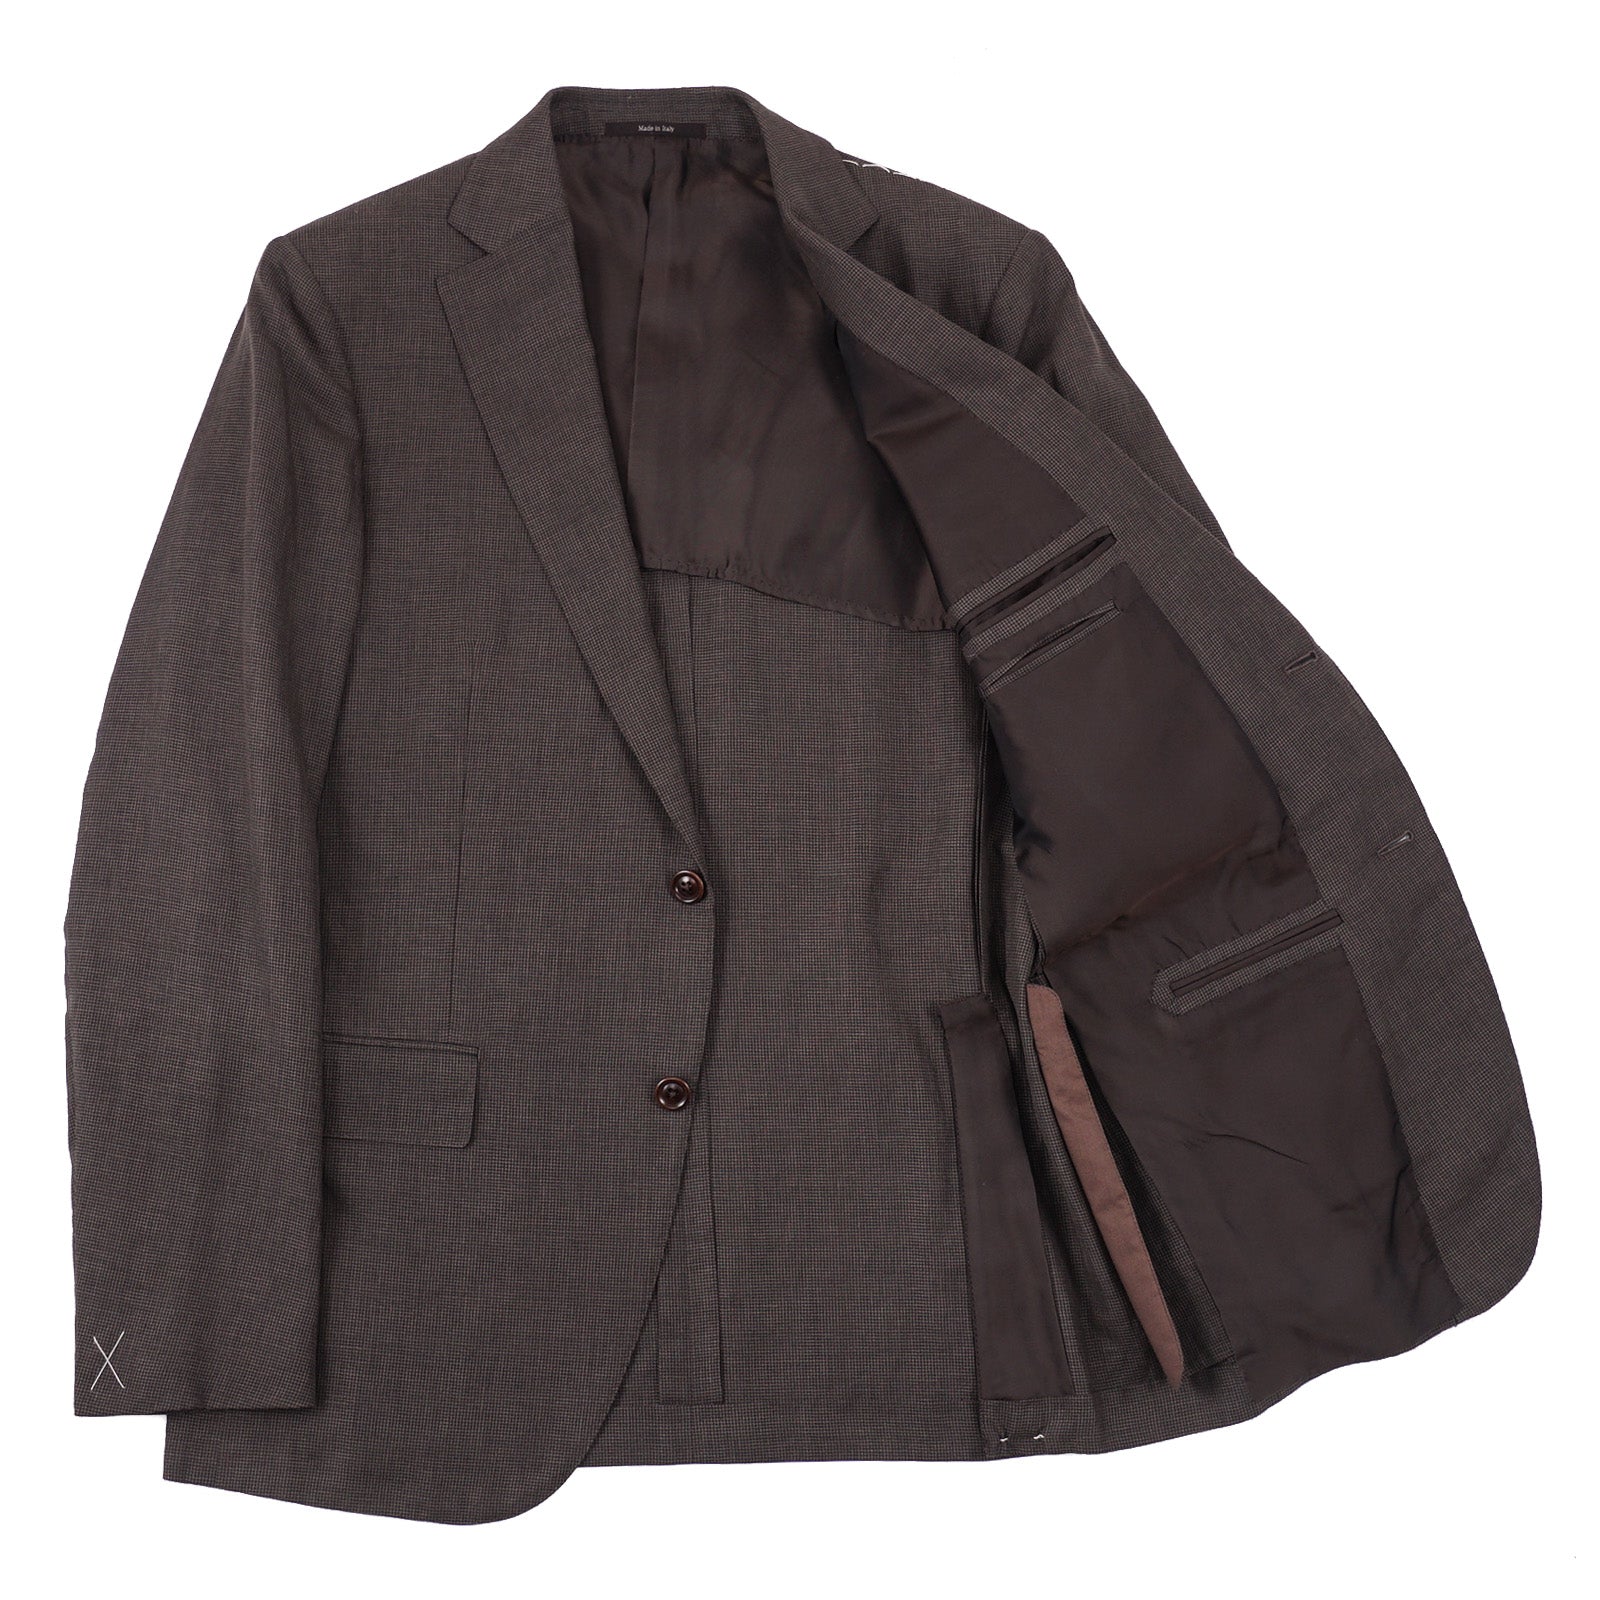 Ermenegildo Zegna Lightweight 'Crossover' Suit - Top Shelf Apparel